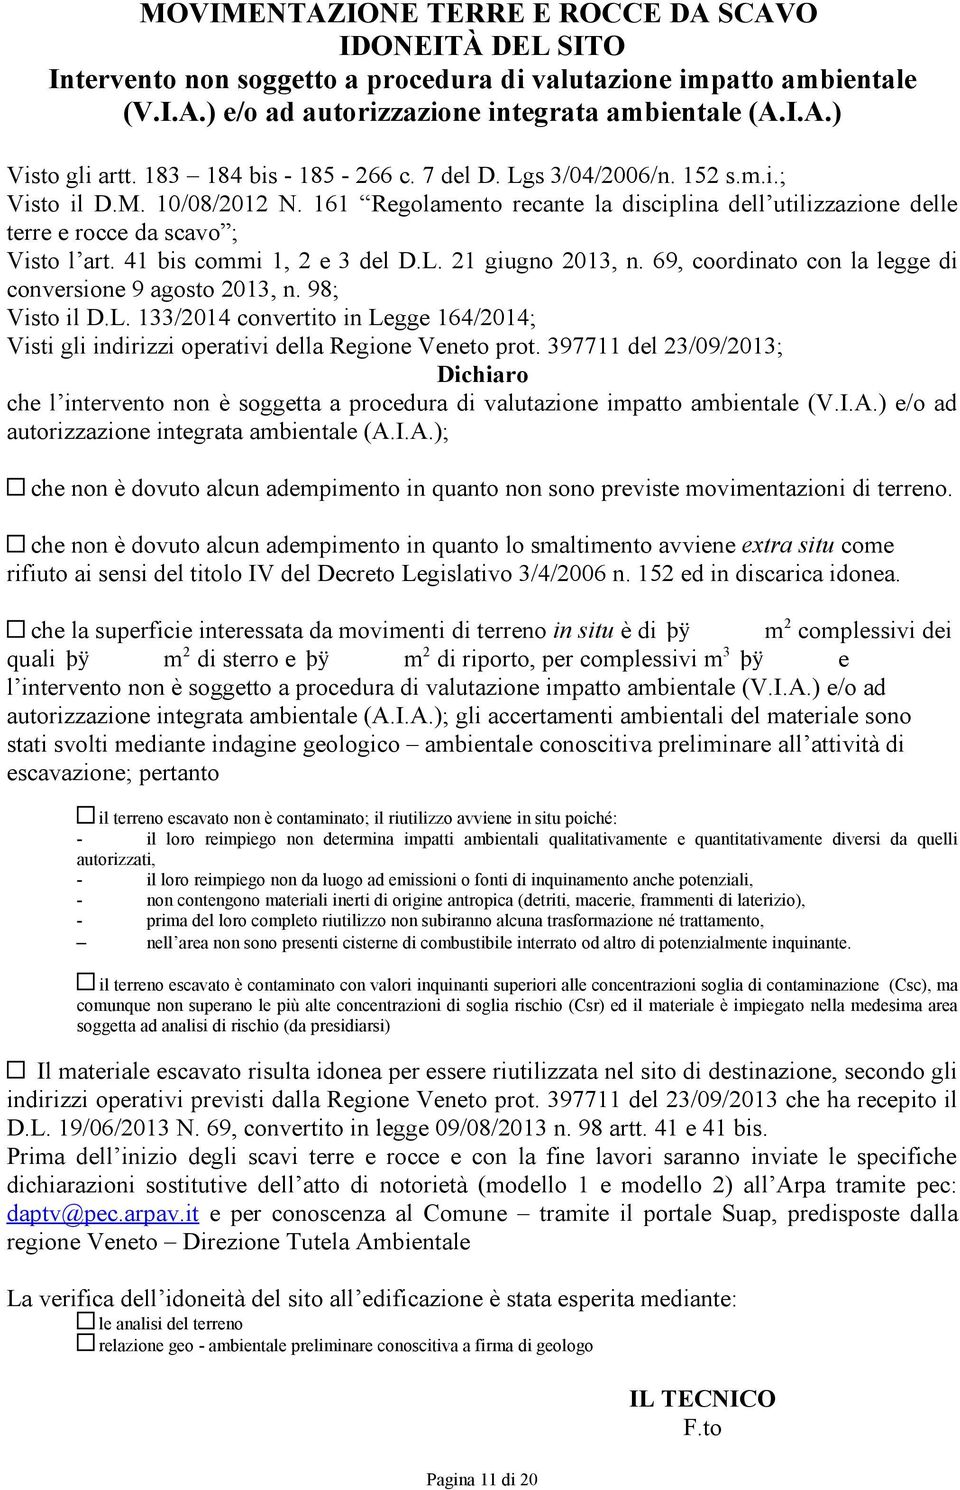 41 bis commi 1, 2 e 3 del D.L. 21 giugno 2013, n. 69, coordinato con la legge di conversione 9 agosto 2013, n. 98; Visto il D.L. 133/2014 convertito in Legge 164/2014; Visti gli indirizzi operativi della Regione Veneto prot.